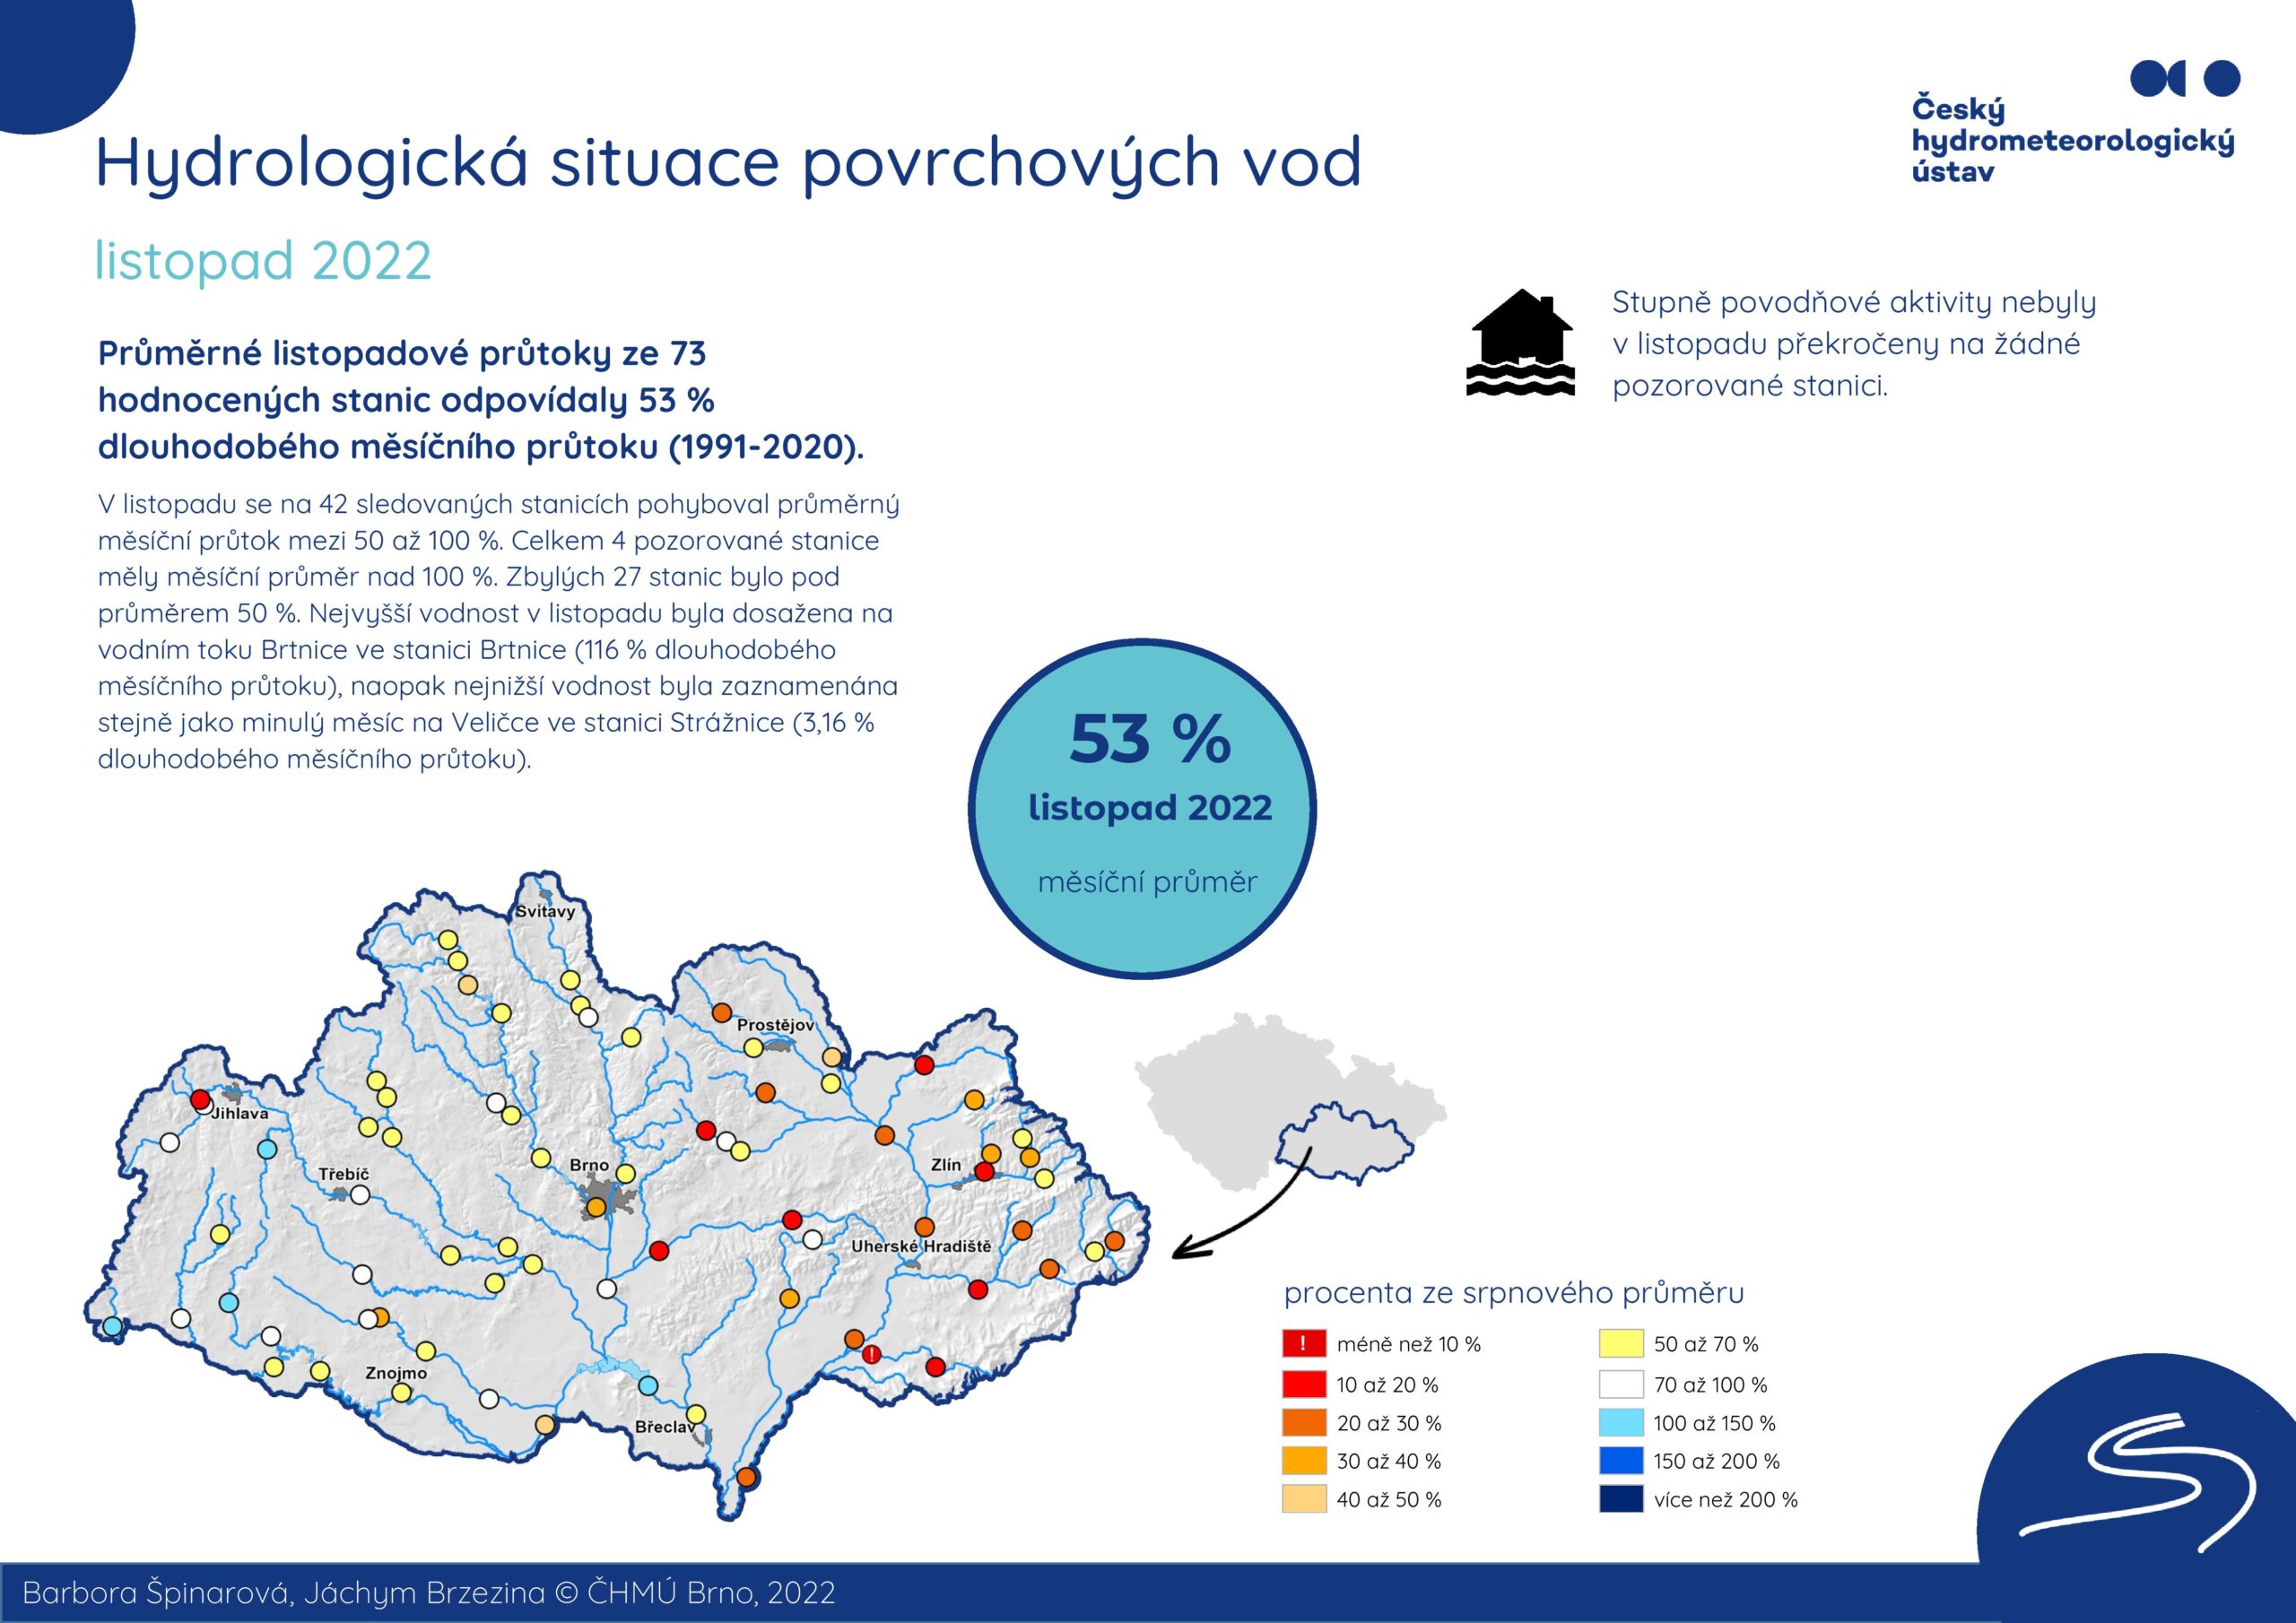 Hydrologická situace povrchových vod na pobočce Brno – listopad 20221 min čtení